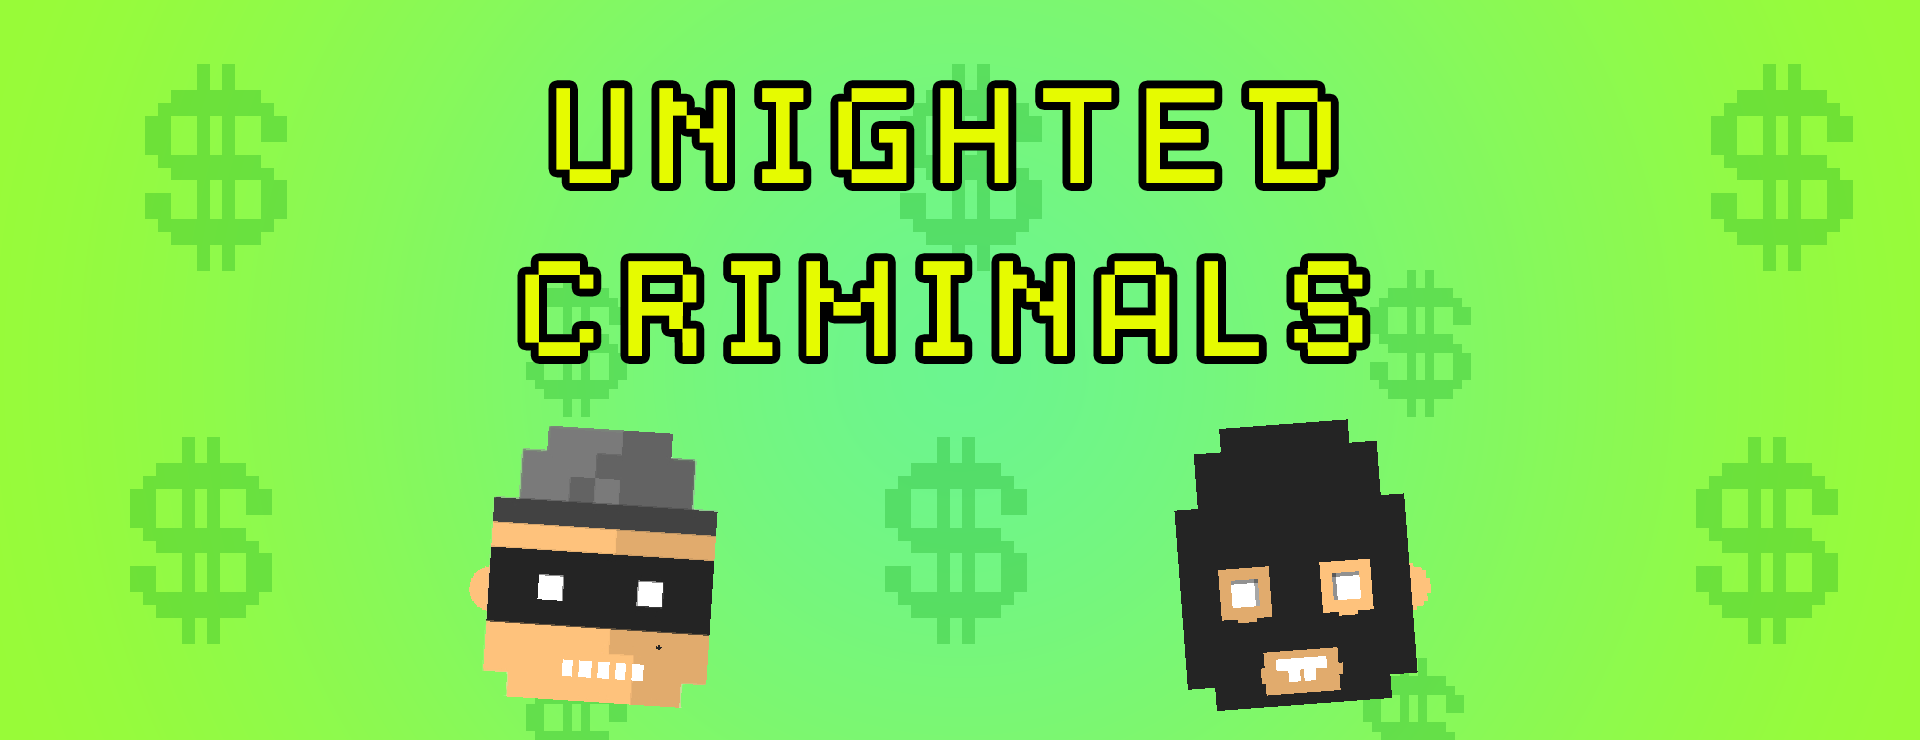 Unighted Criminals